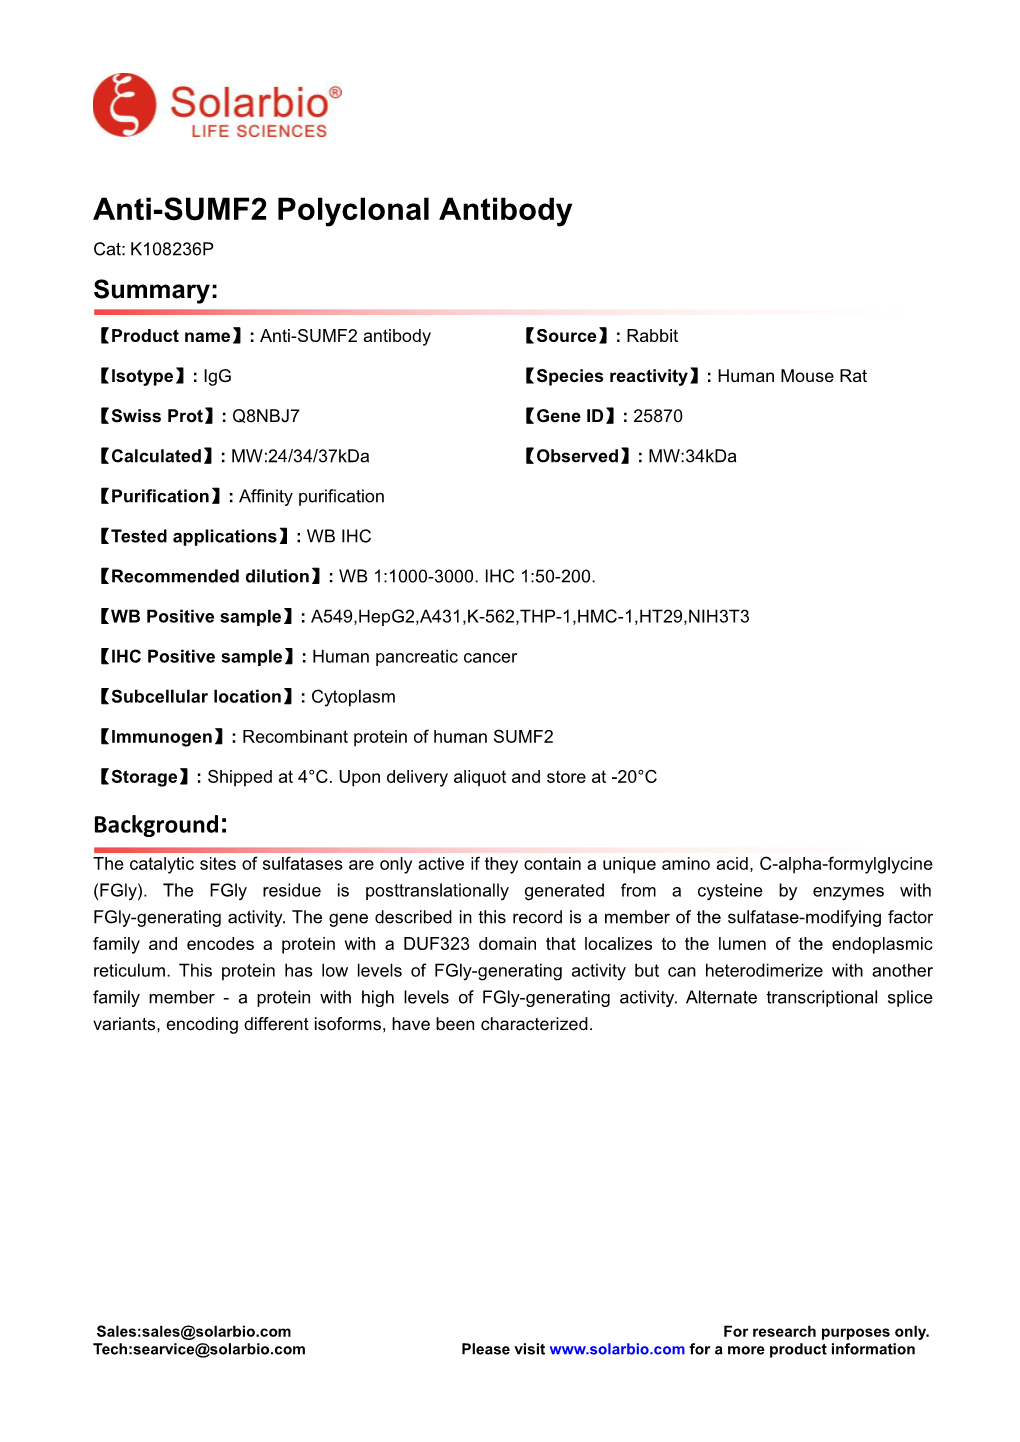 Anti-SUMF2 Polyclonal Antibody Cat: K108236P Summary